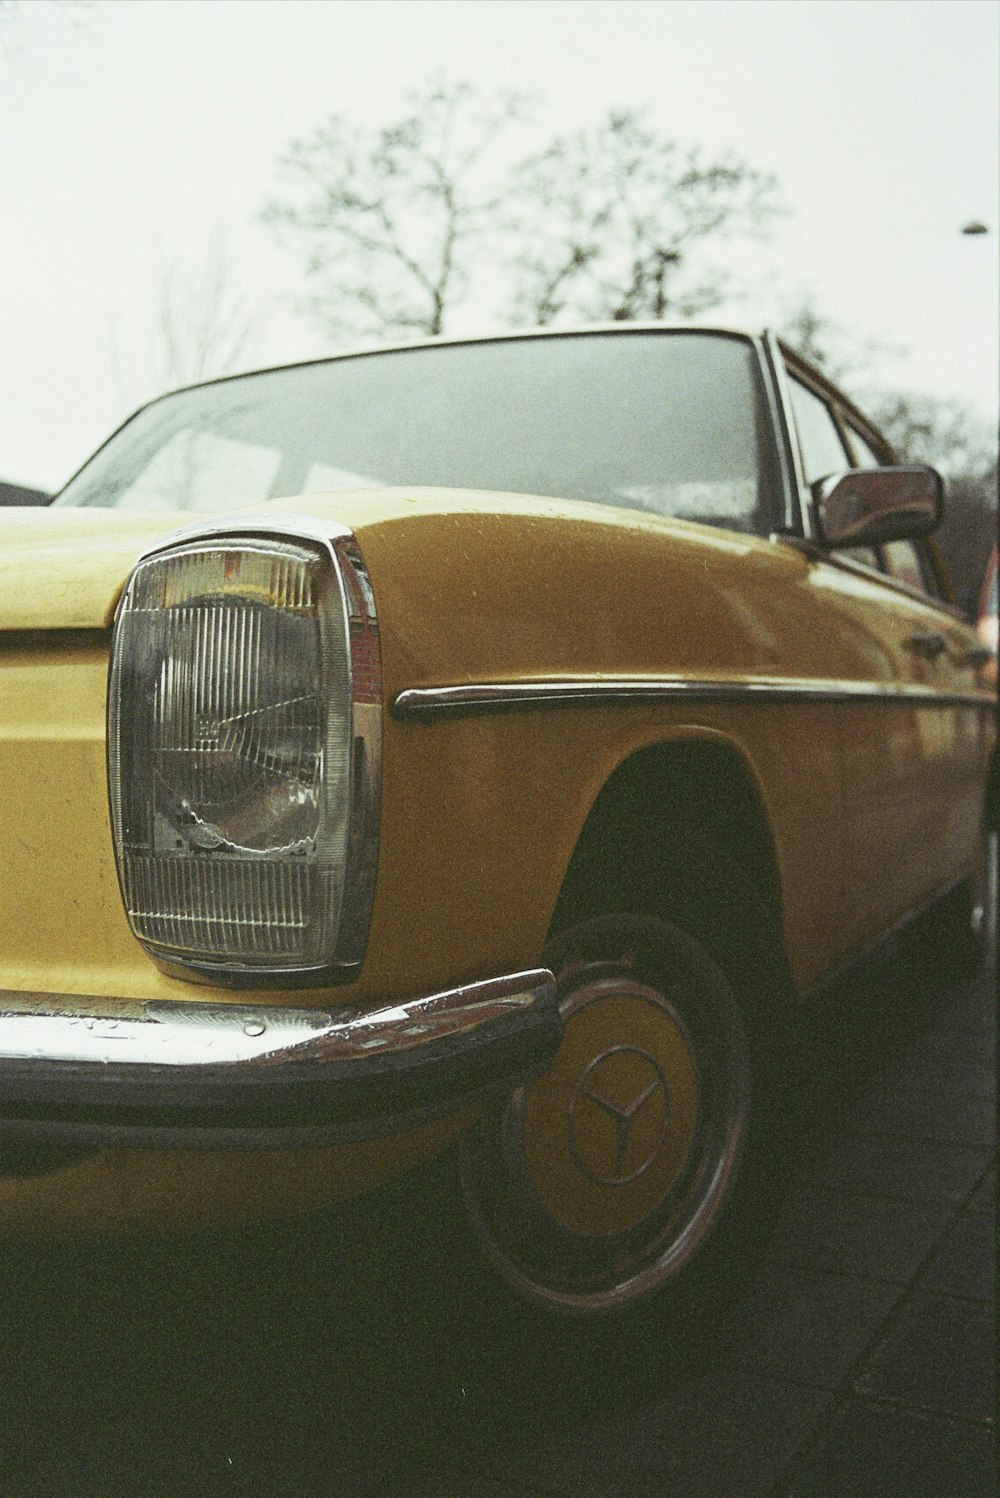 회색 포장 도로에 노란색과 검은 색 자동차